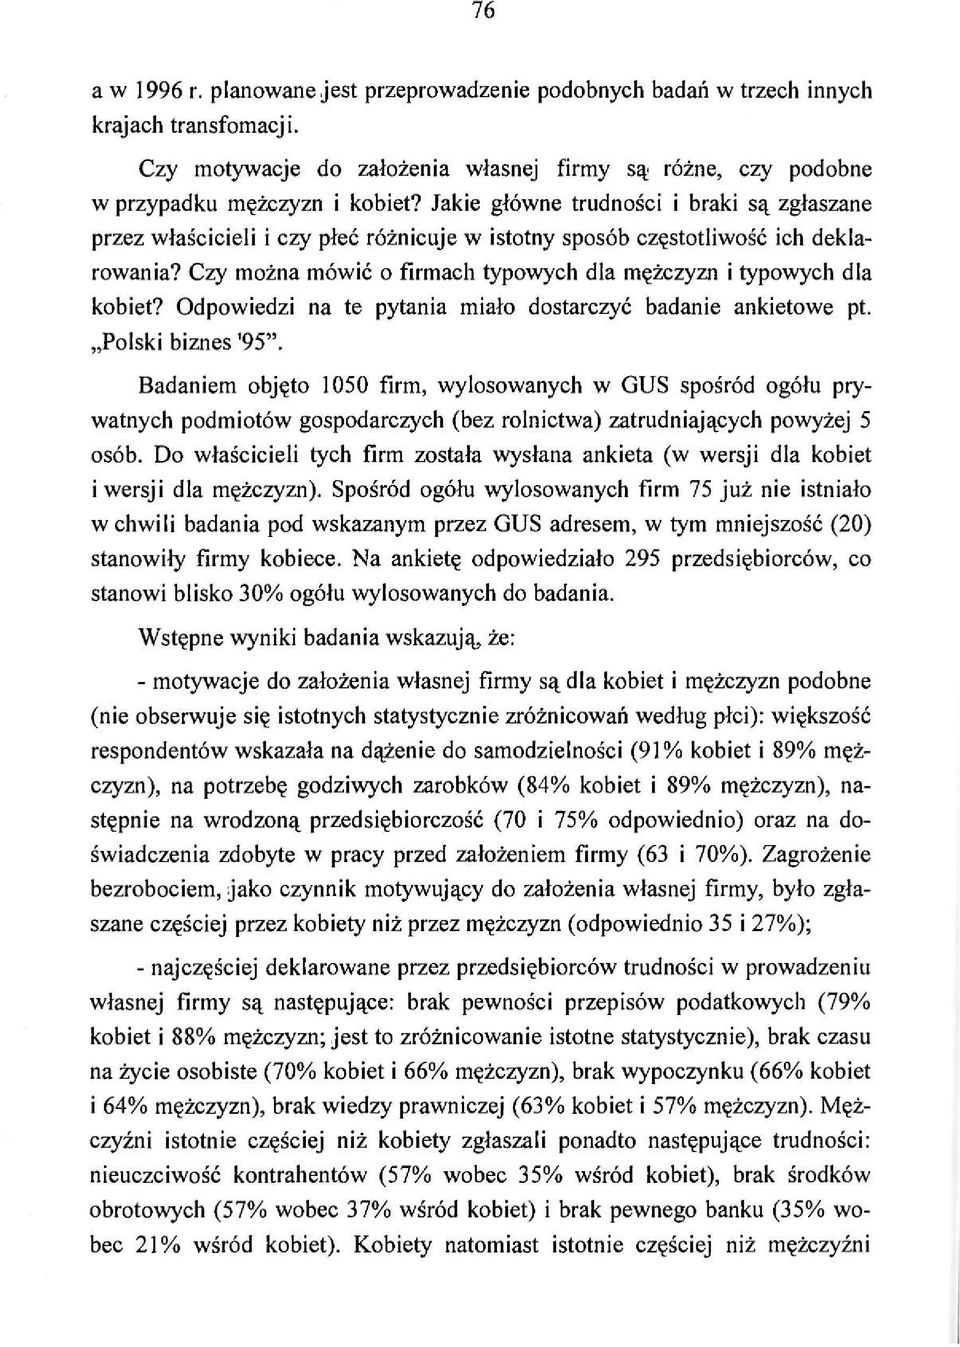 Czy można mówić o firmach typowych dla mężczyzn i typowych dla kobiet? Odpowiedzi na te pytania miało dostarczyć badanie ankietowe pt. Polski biznes '95".